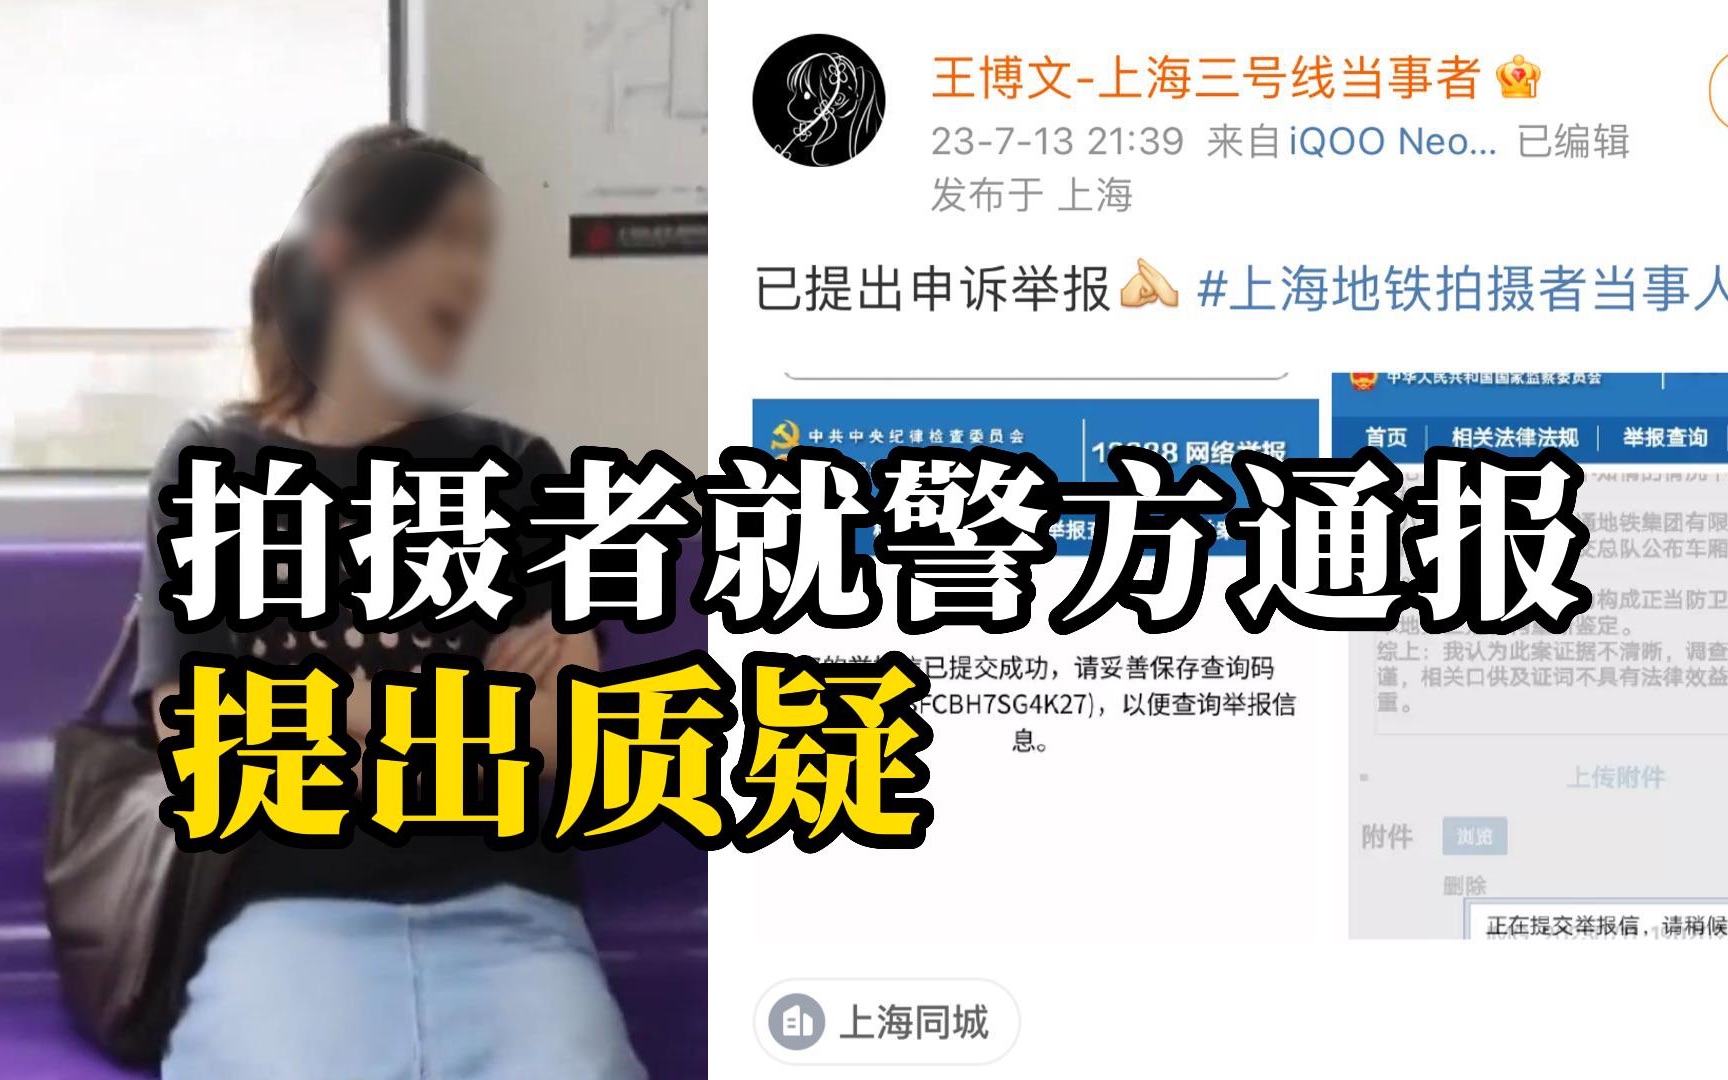 “上海地铁辱华女”拍摄者发声 针对警方通报提出质疑